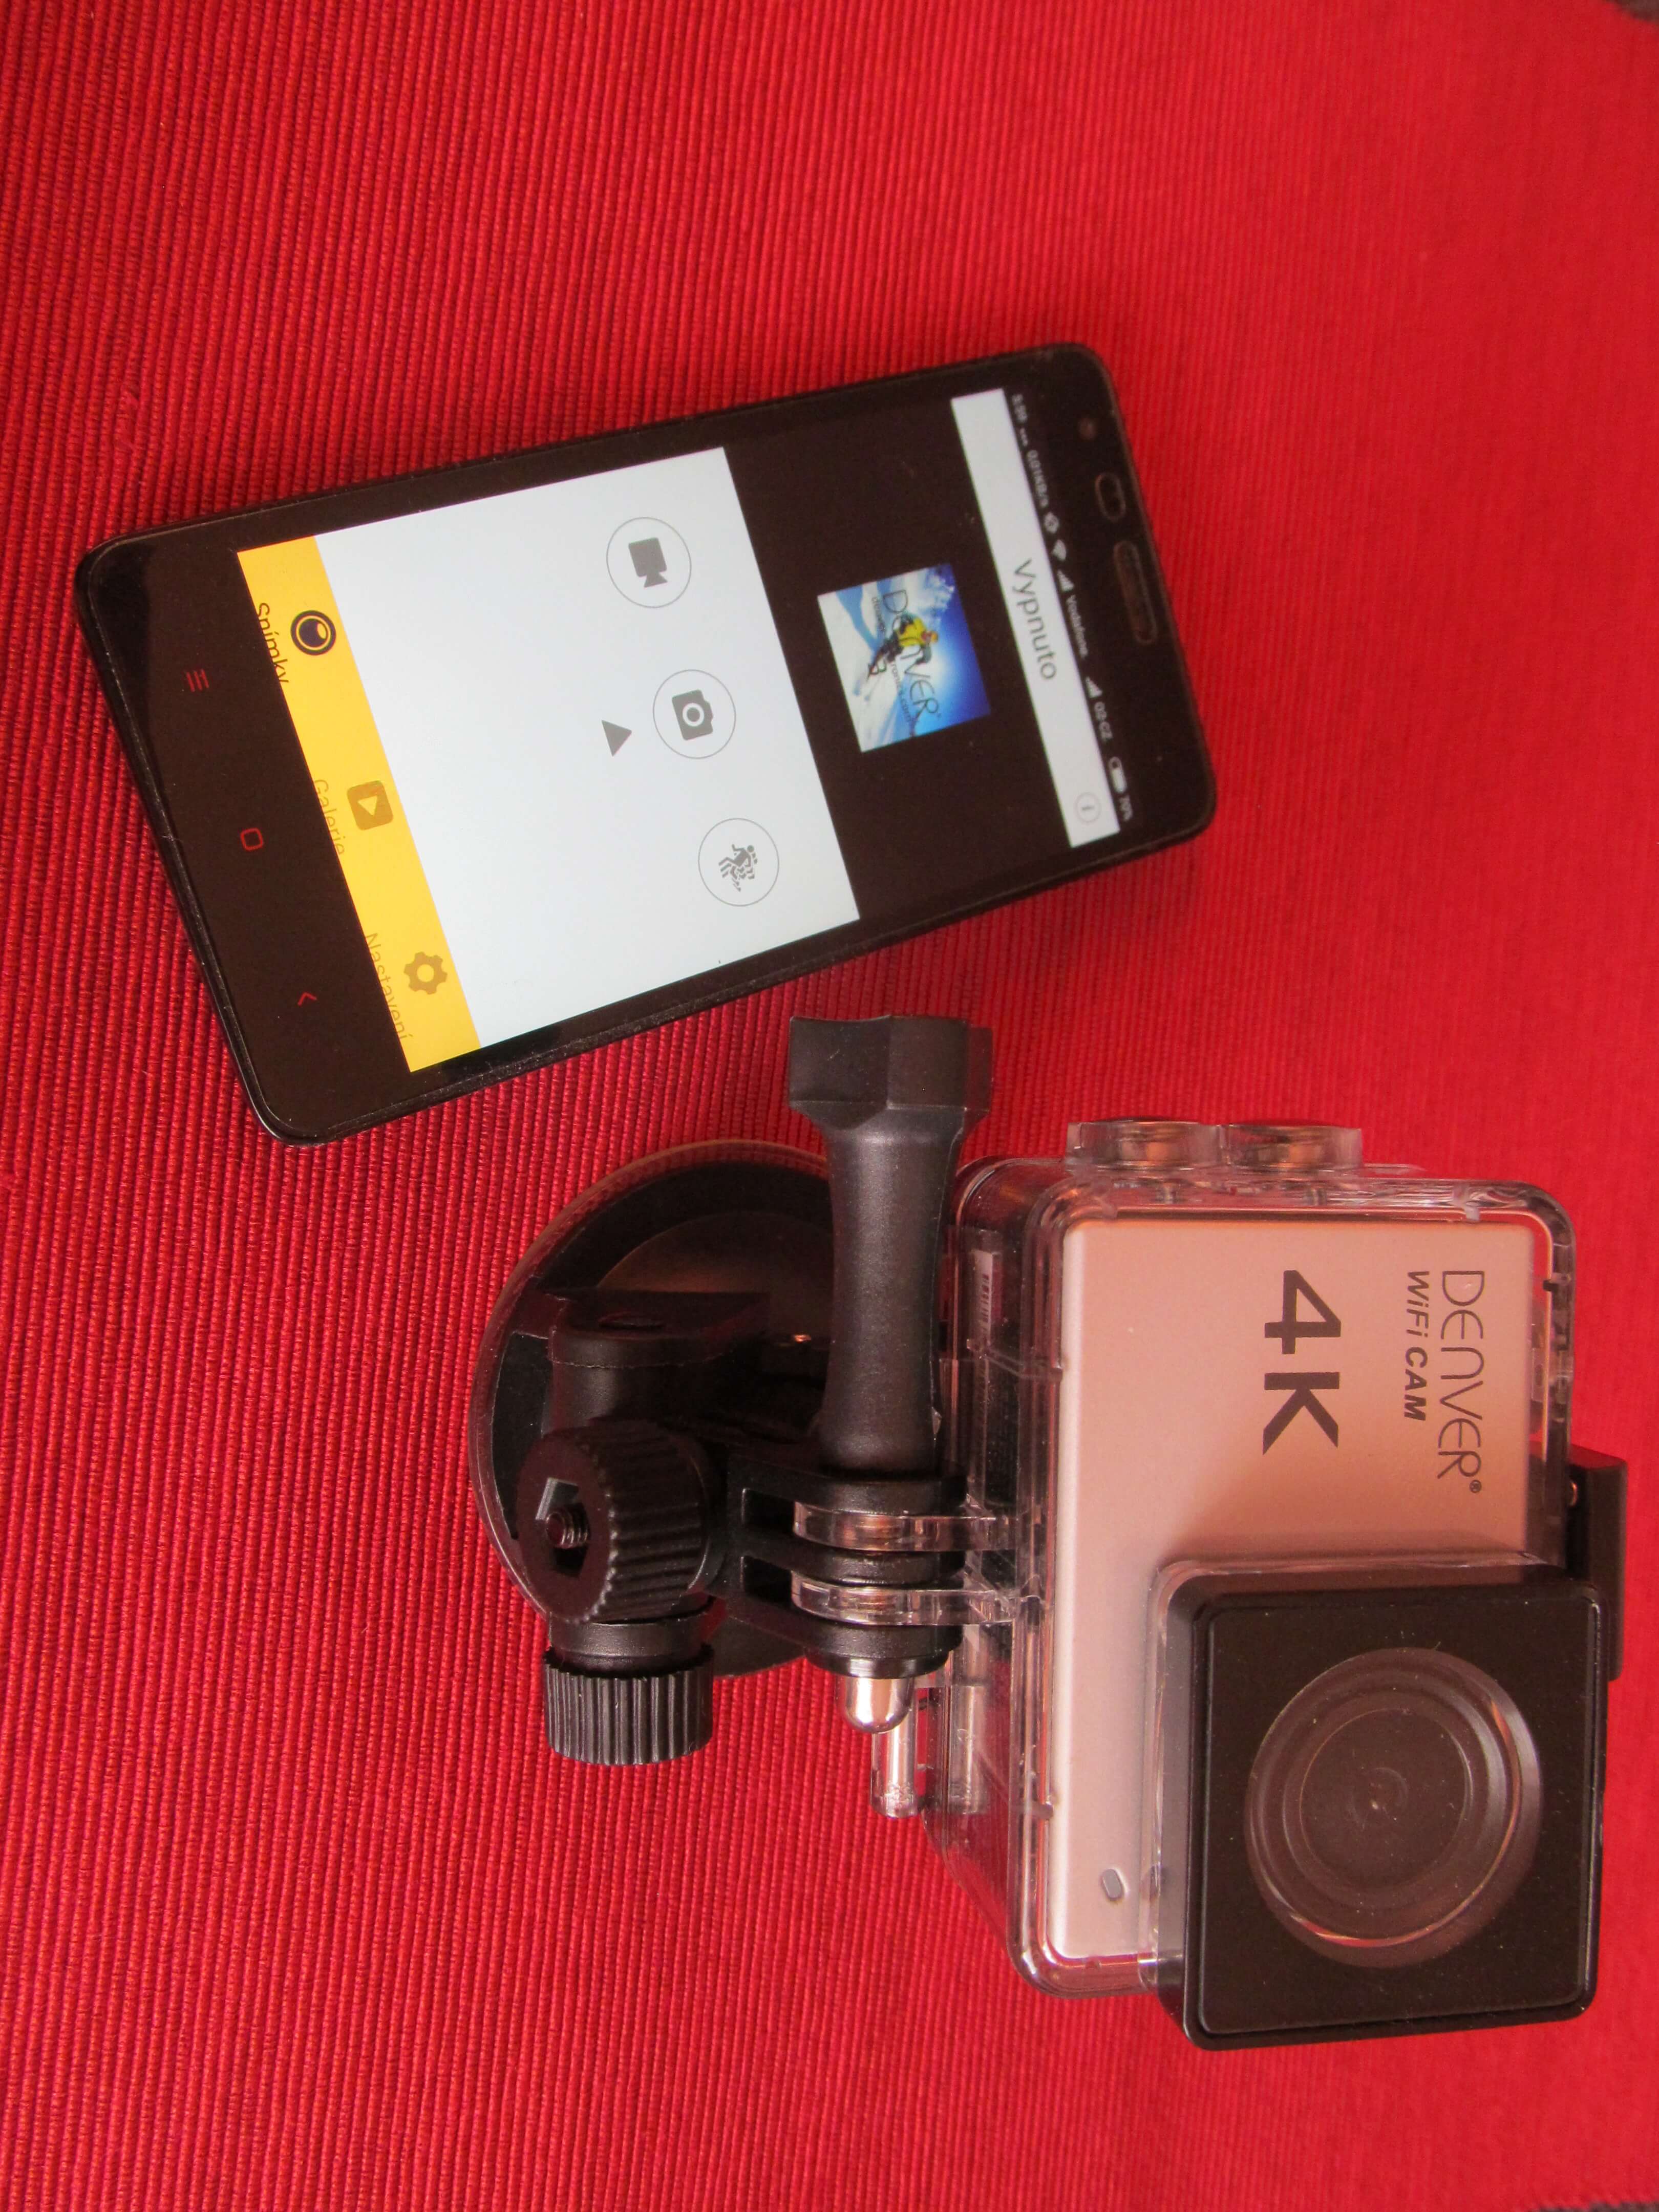 Kamera Denver ACK-8060W a telefon s ovládací aplikací.